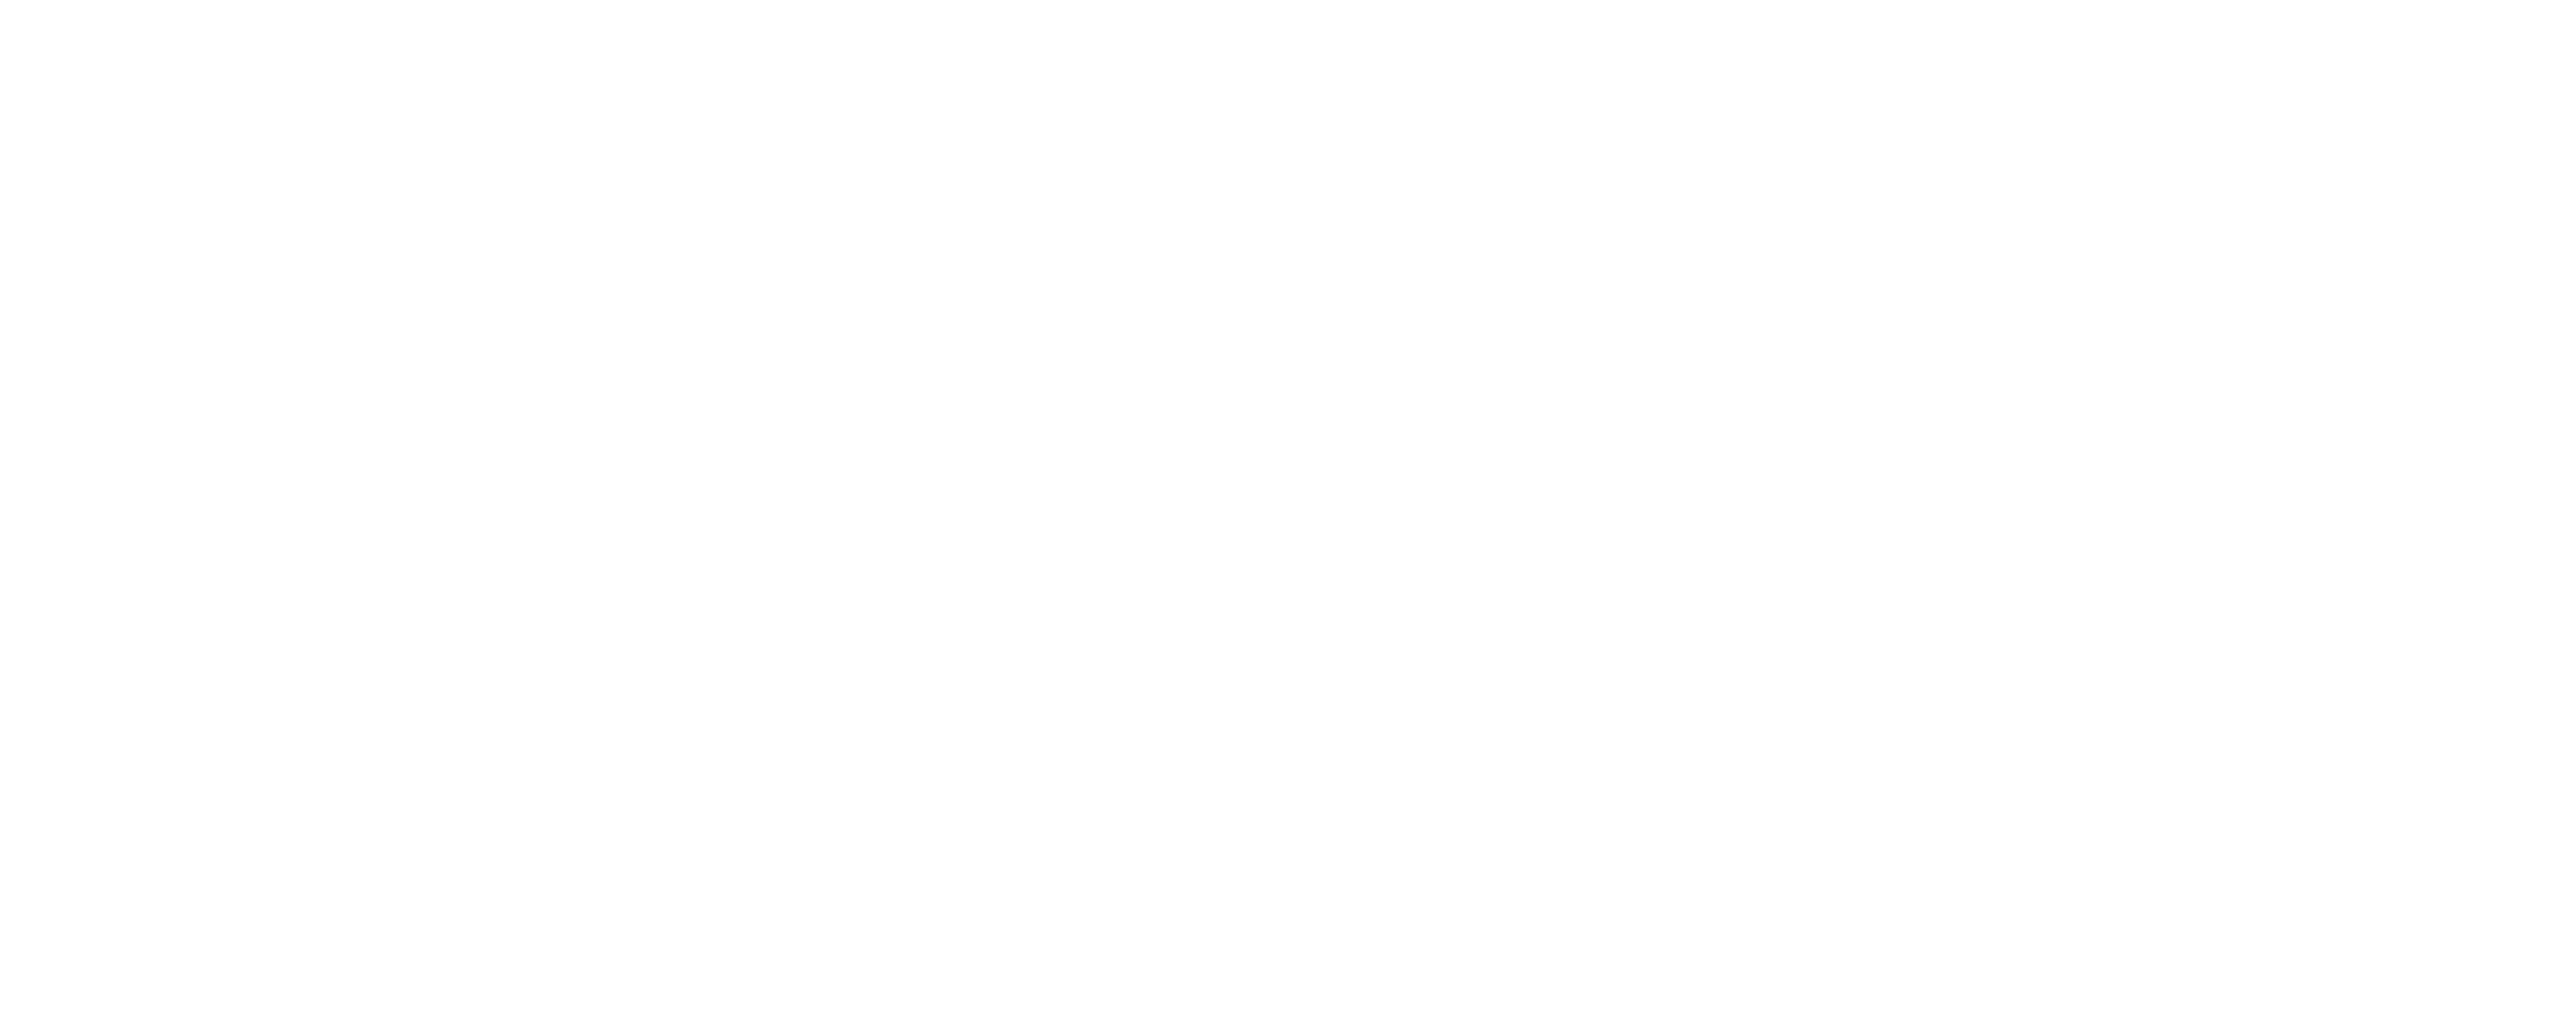 Elite Automotive LLC